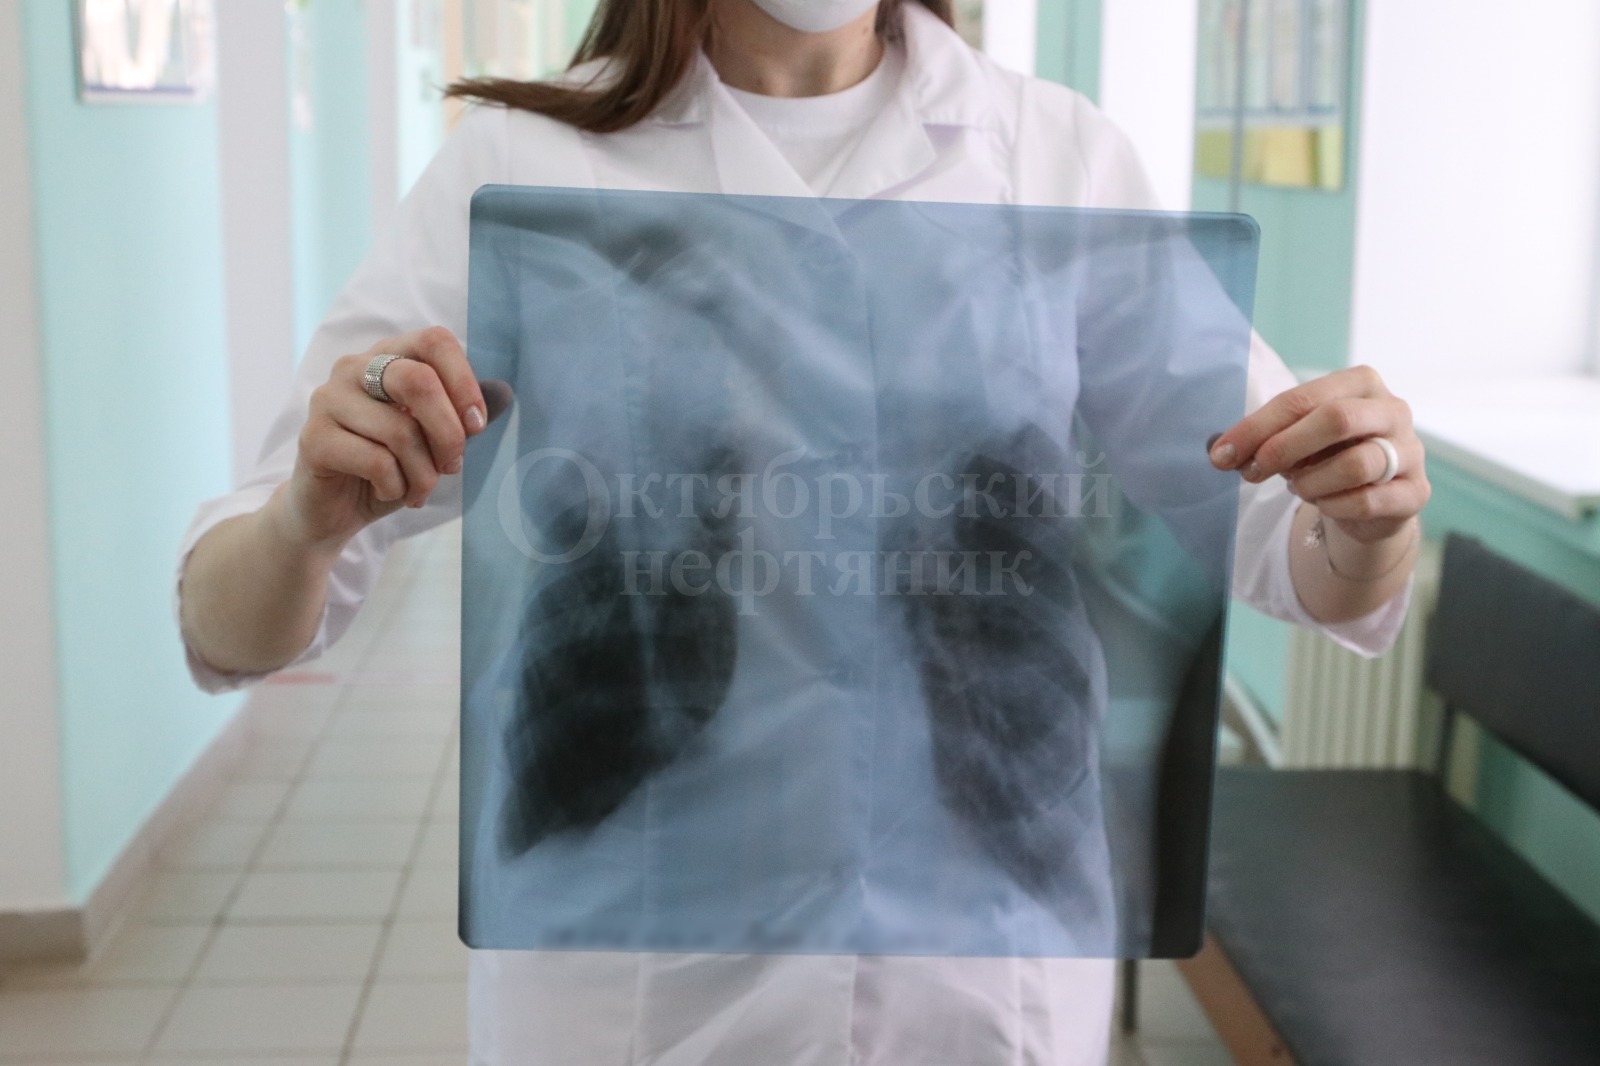 Так выглядят лёгкие человека с туберкулёзом. / Фото: Виктор Лушкин, «Октябрьский нефтяник»